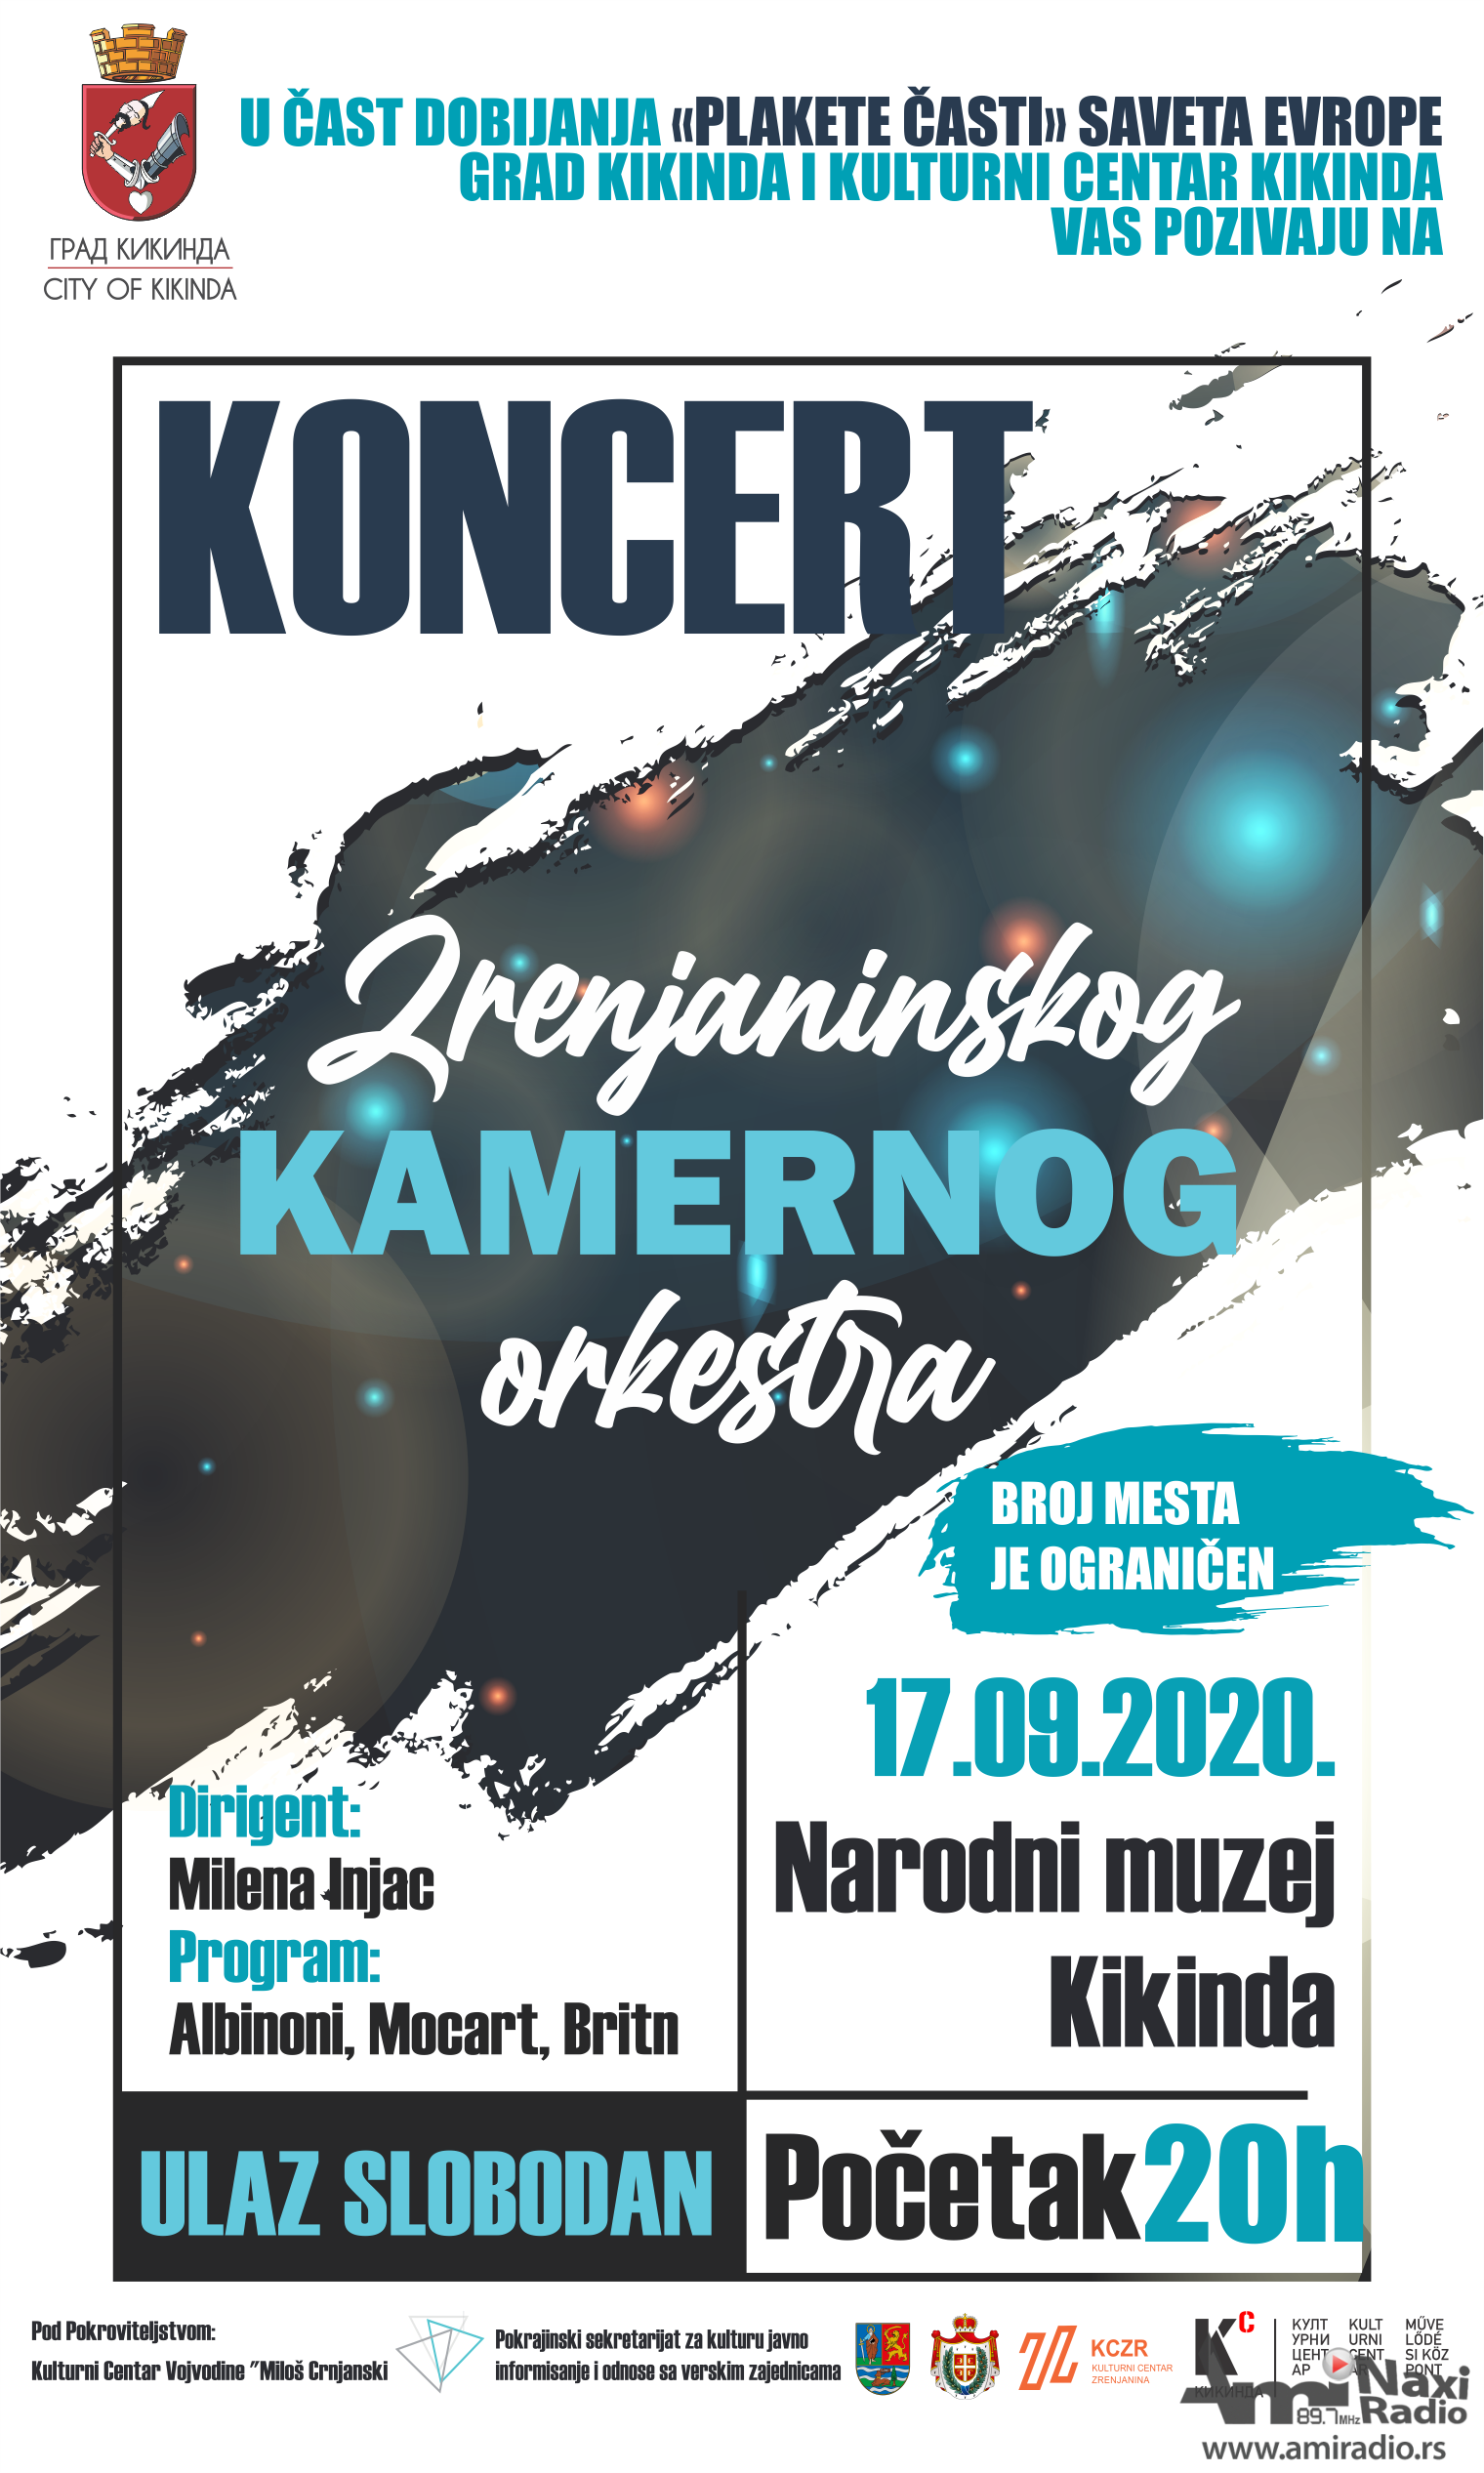 Koncert Zrenjaninskog kamernog orkestra u četvrtak u Muzeju